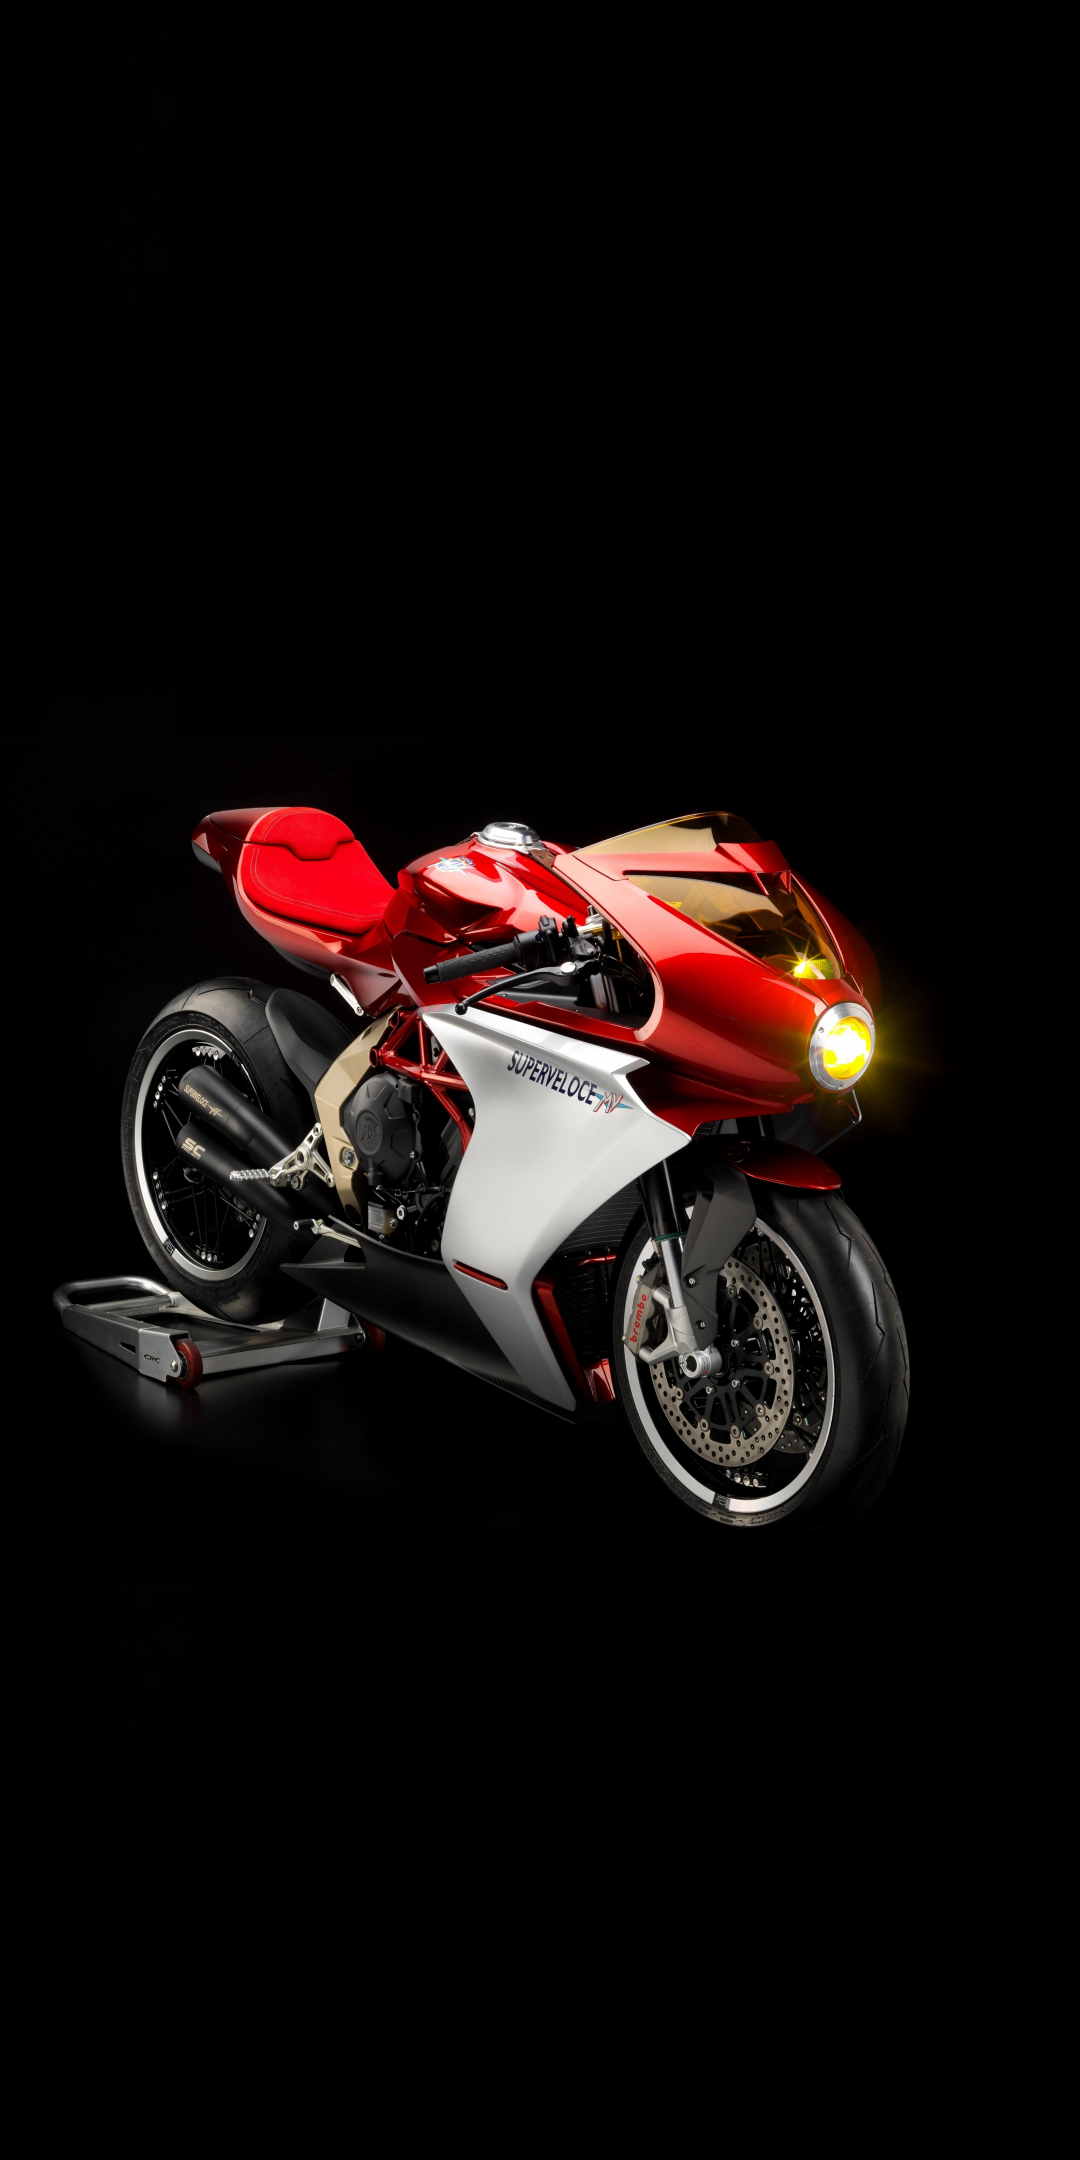 Sports bike, MV Agusta Superveloce 800, 1080x2160 wallpaper